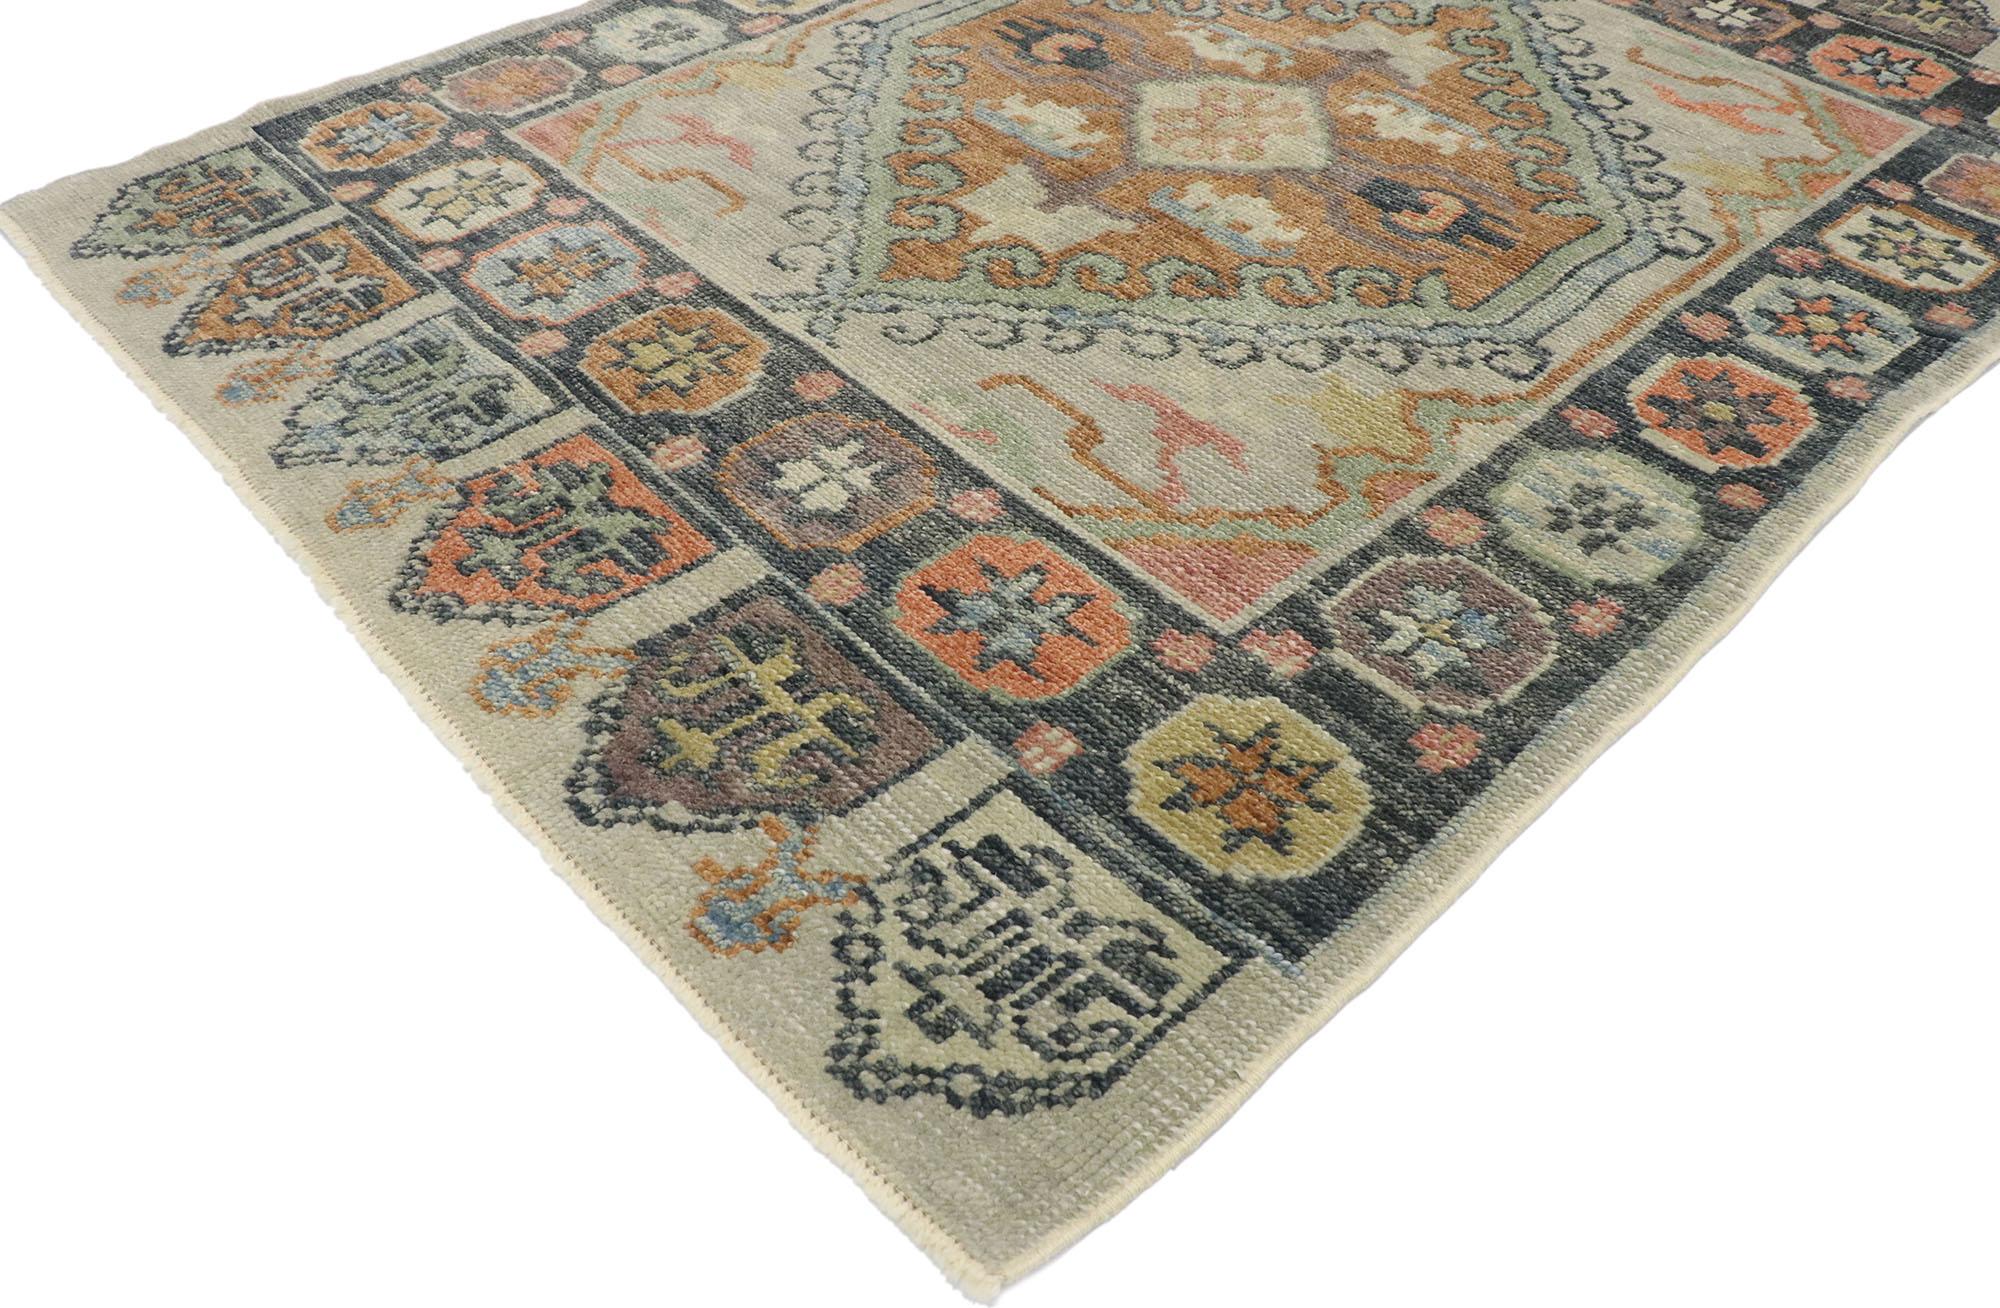 53429 Nouveau tapis contemporain turc Oushak avec un style artisanal américain moderne. Imprégné du symbolisme anatolien, ce tapis contemporain turc Oushak en laine nouée à la main, de style artisanal américain moderne, séduit par son attrait